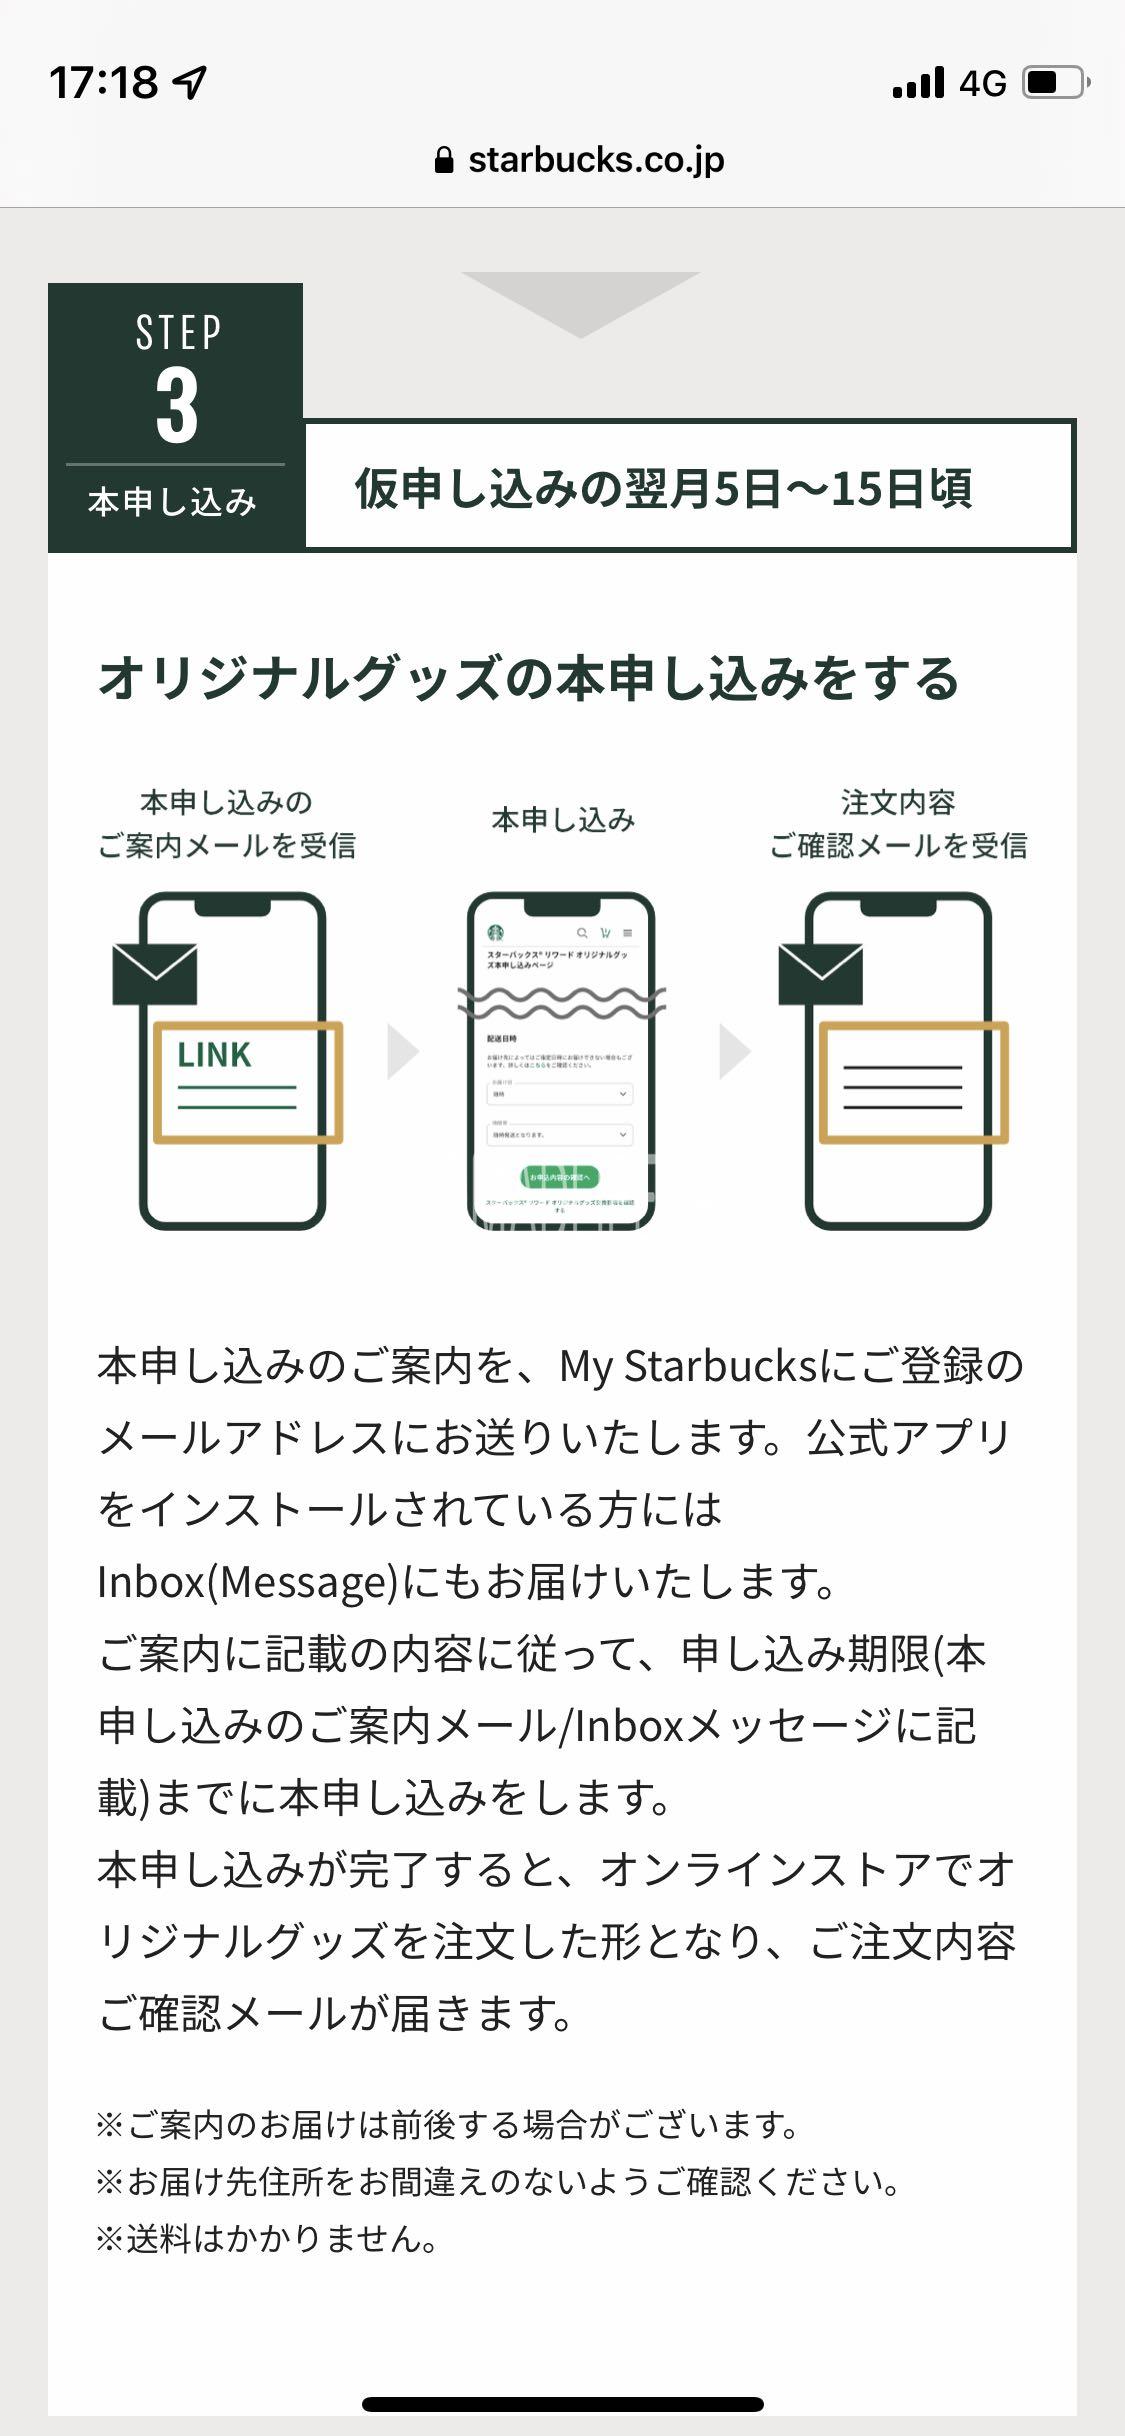 Starbucs rewards request